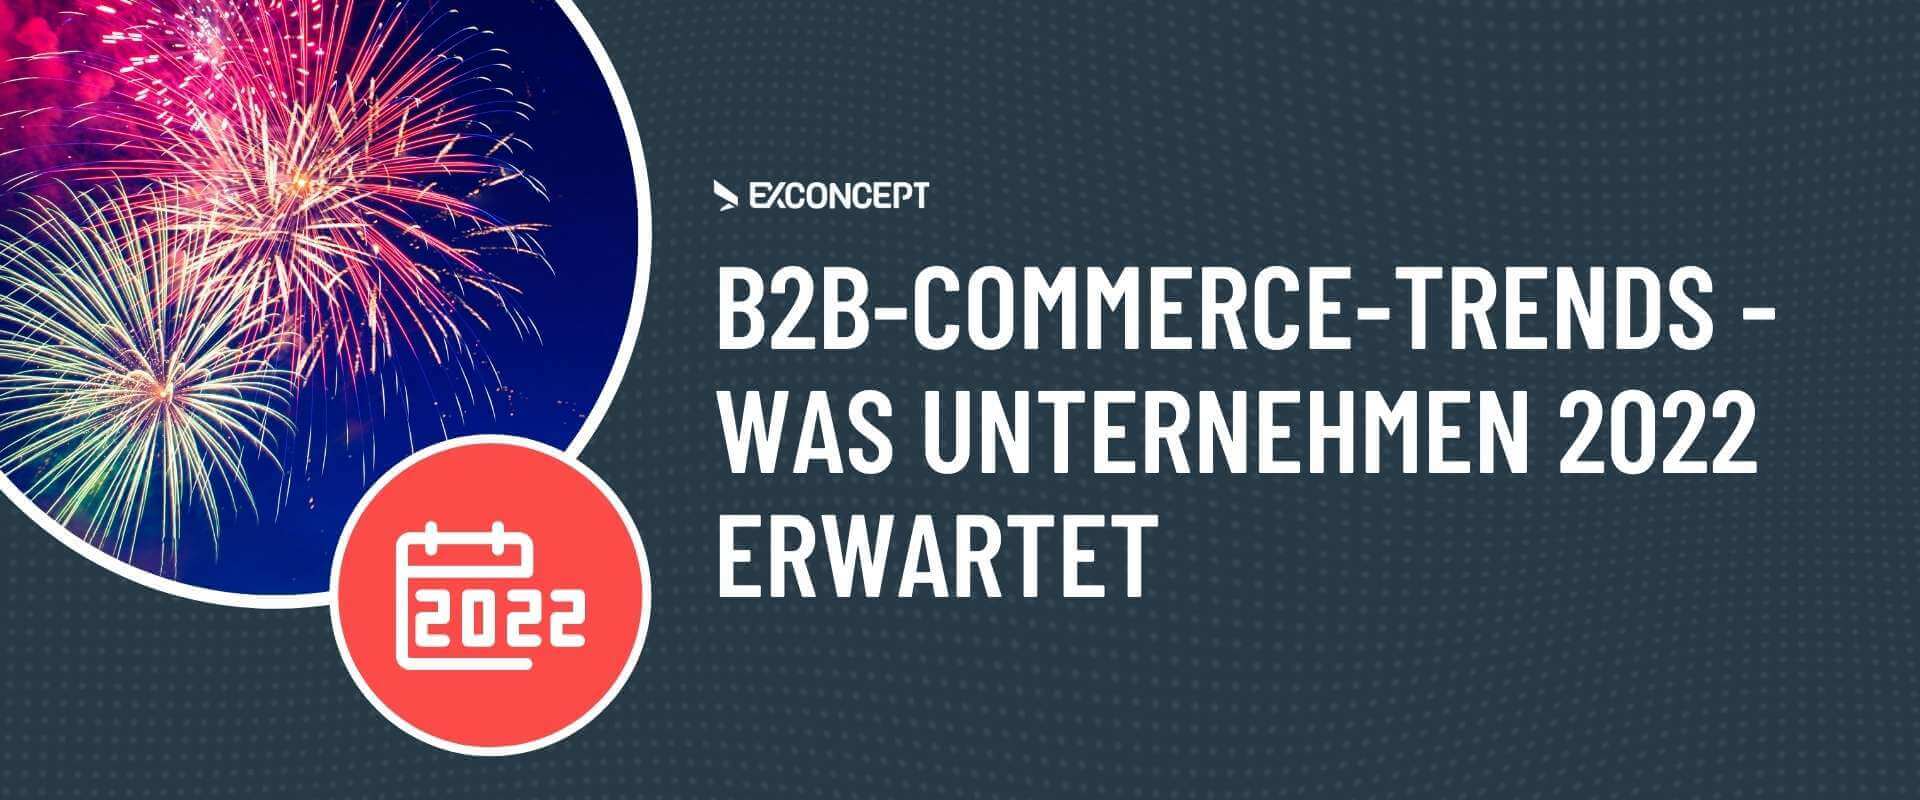 Artikeltitel B2B-E-Commerce-Trends 2022